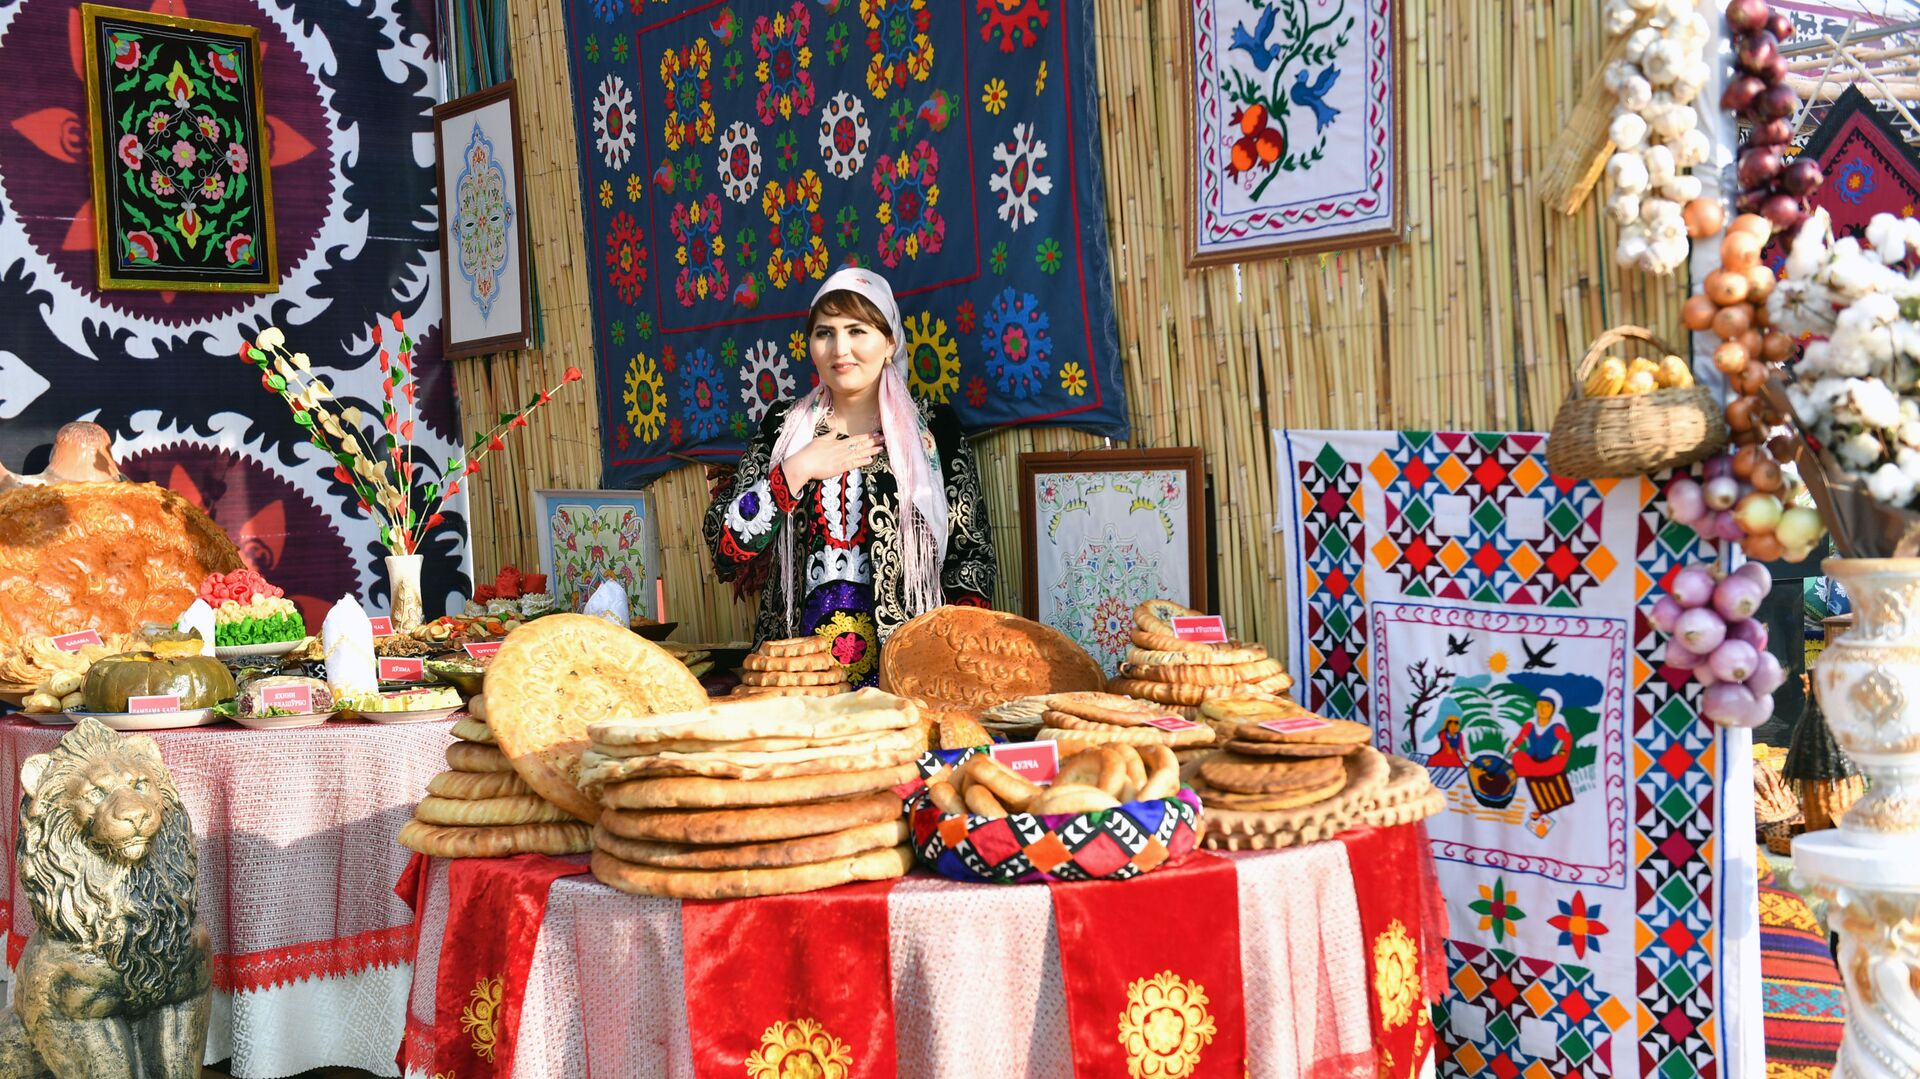 Достижения народного хозяйства на выставке в Согдийской области - Sputnik Таджикистан, 1920, 11.06.2021